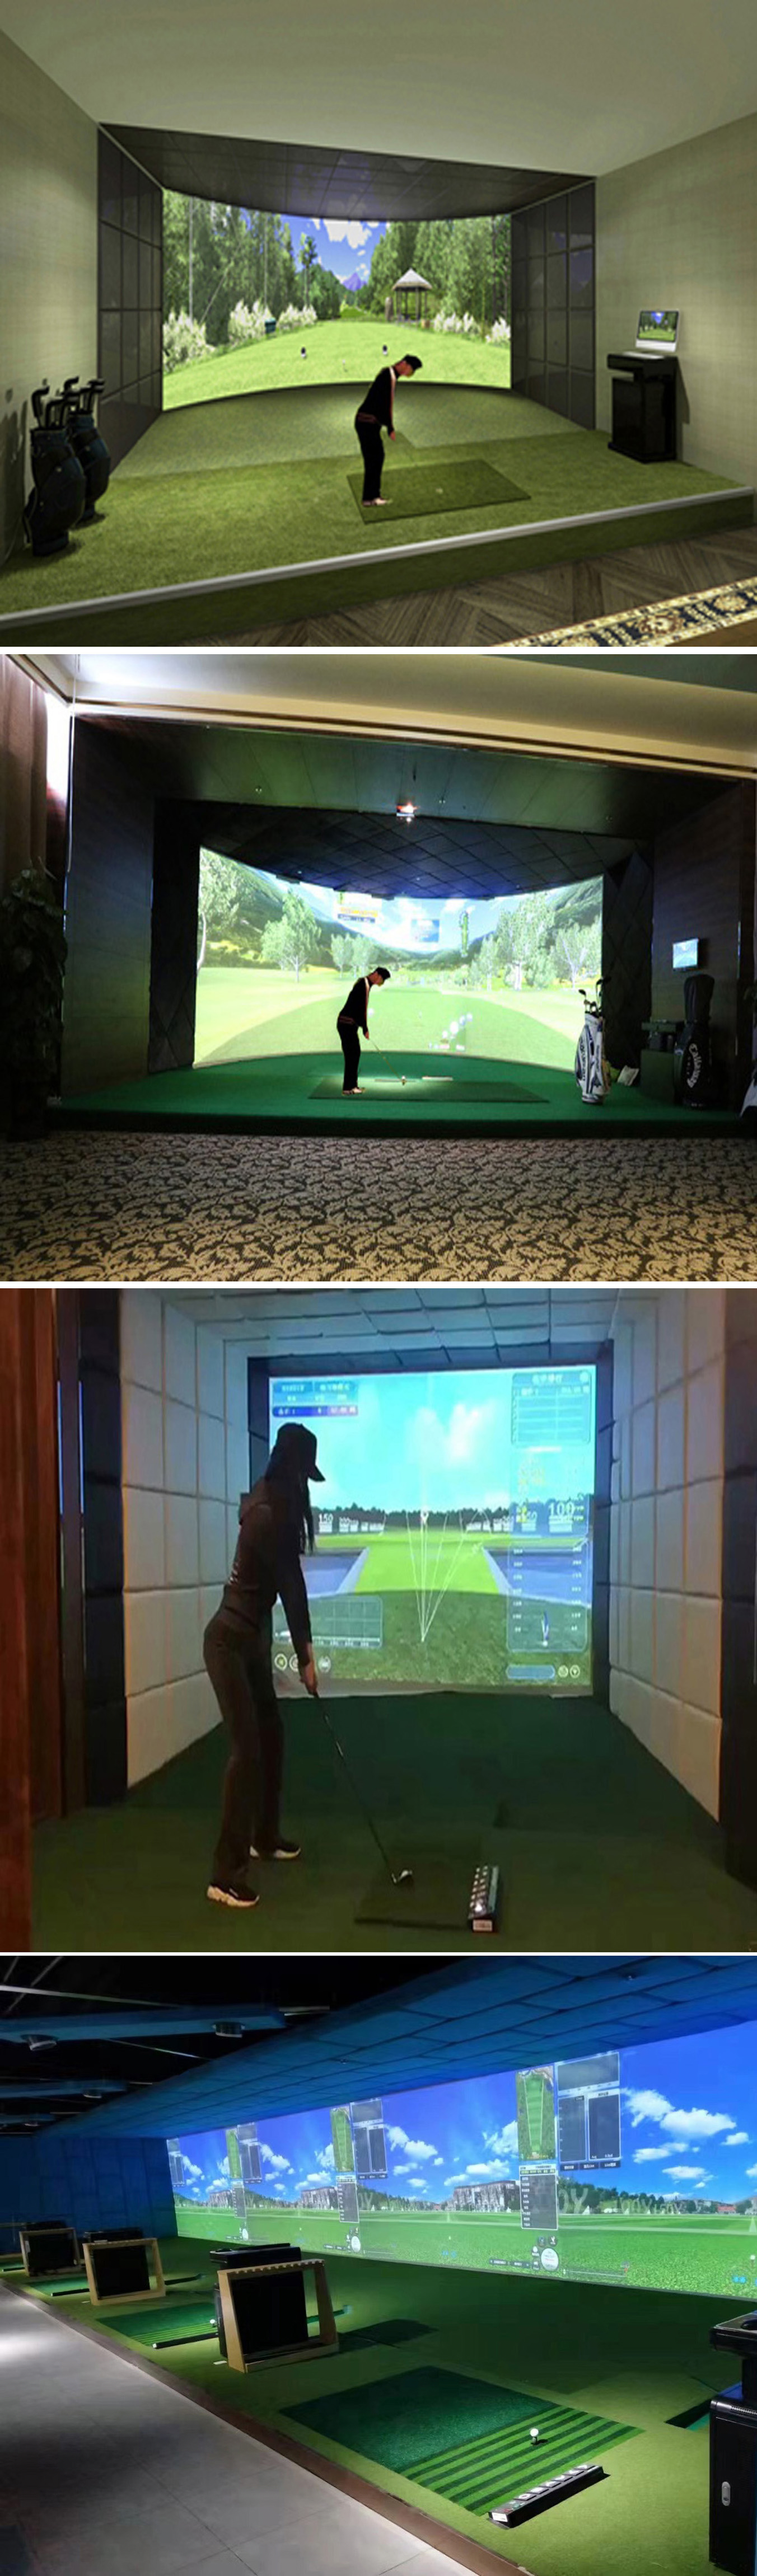 模拟高尔夫系统练习场 一.jpg